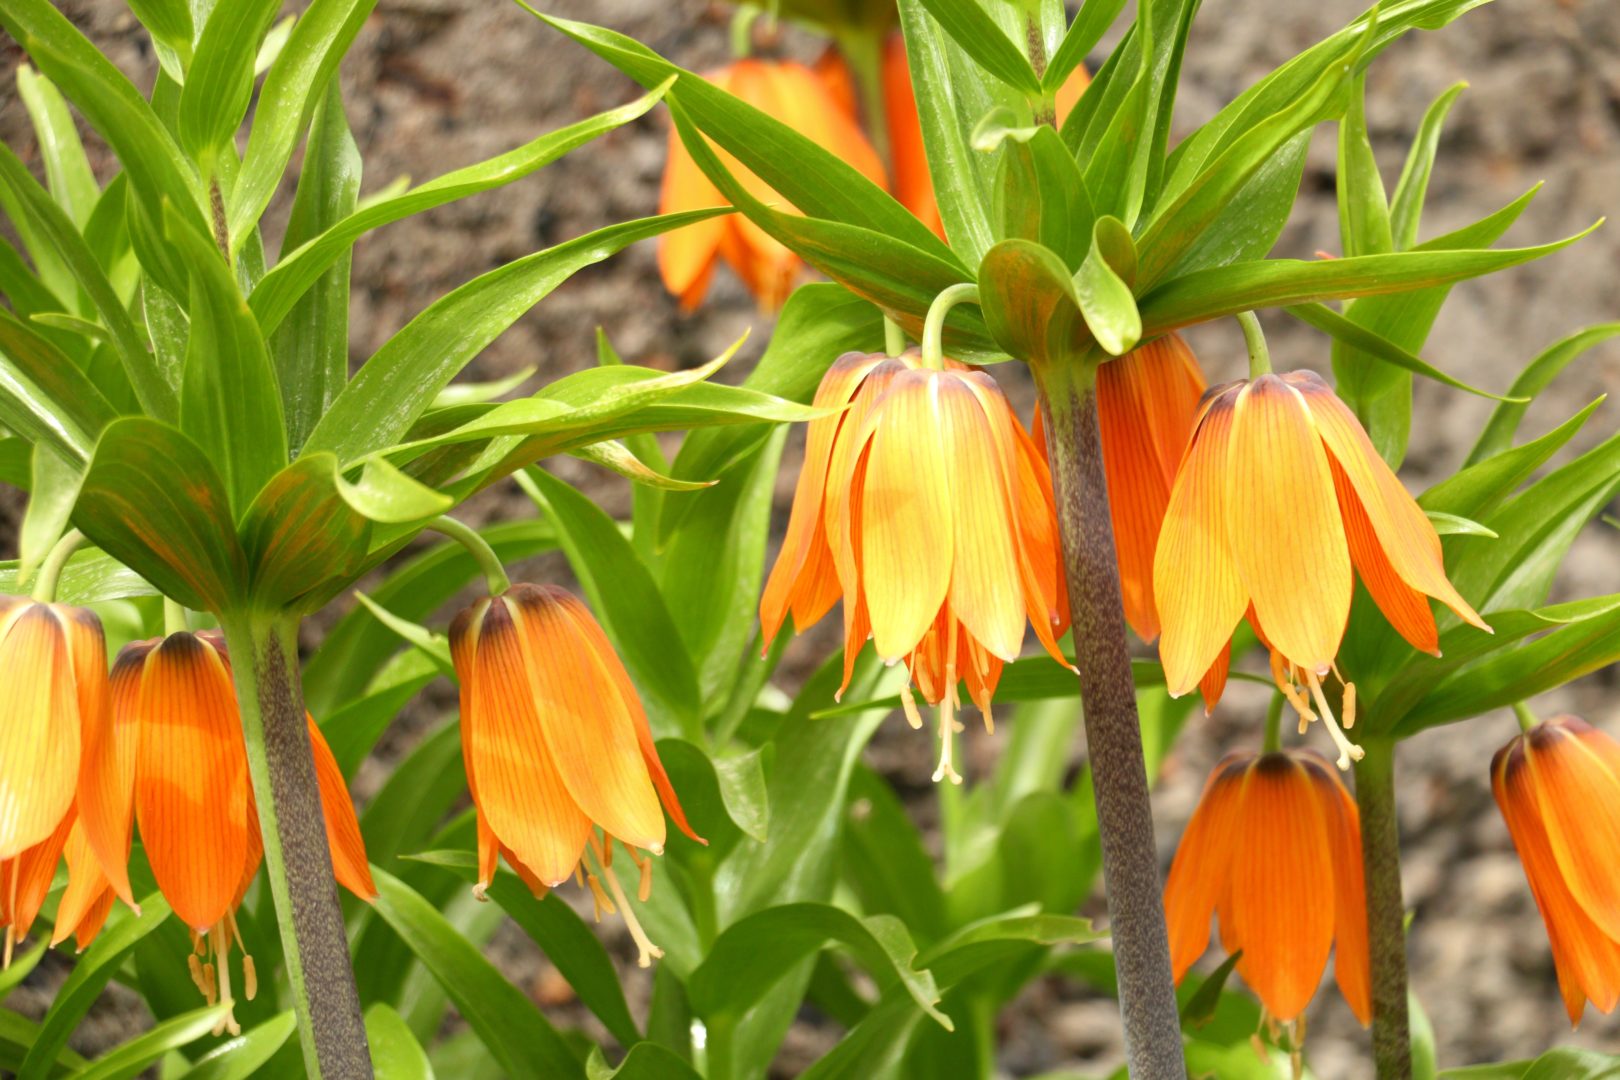 Цветок с оранжевыми колокольчиками - рябчик императорский, или фритиллярия